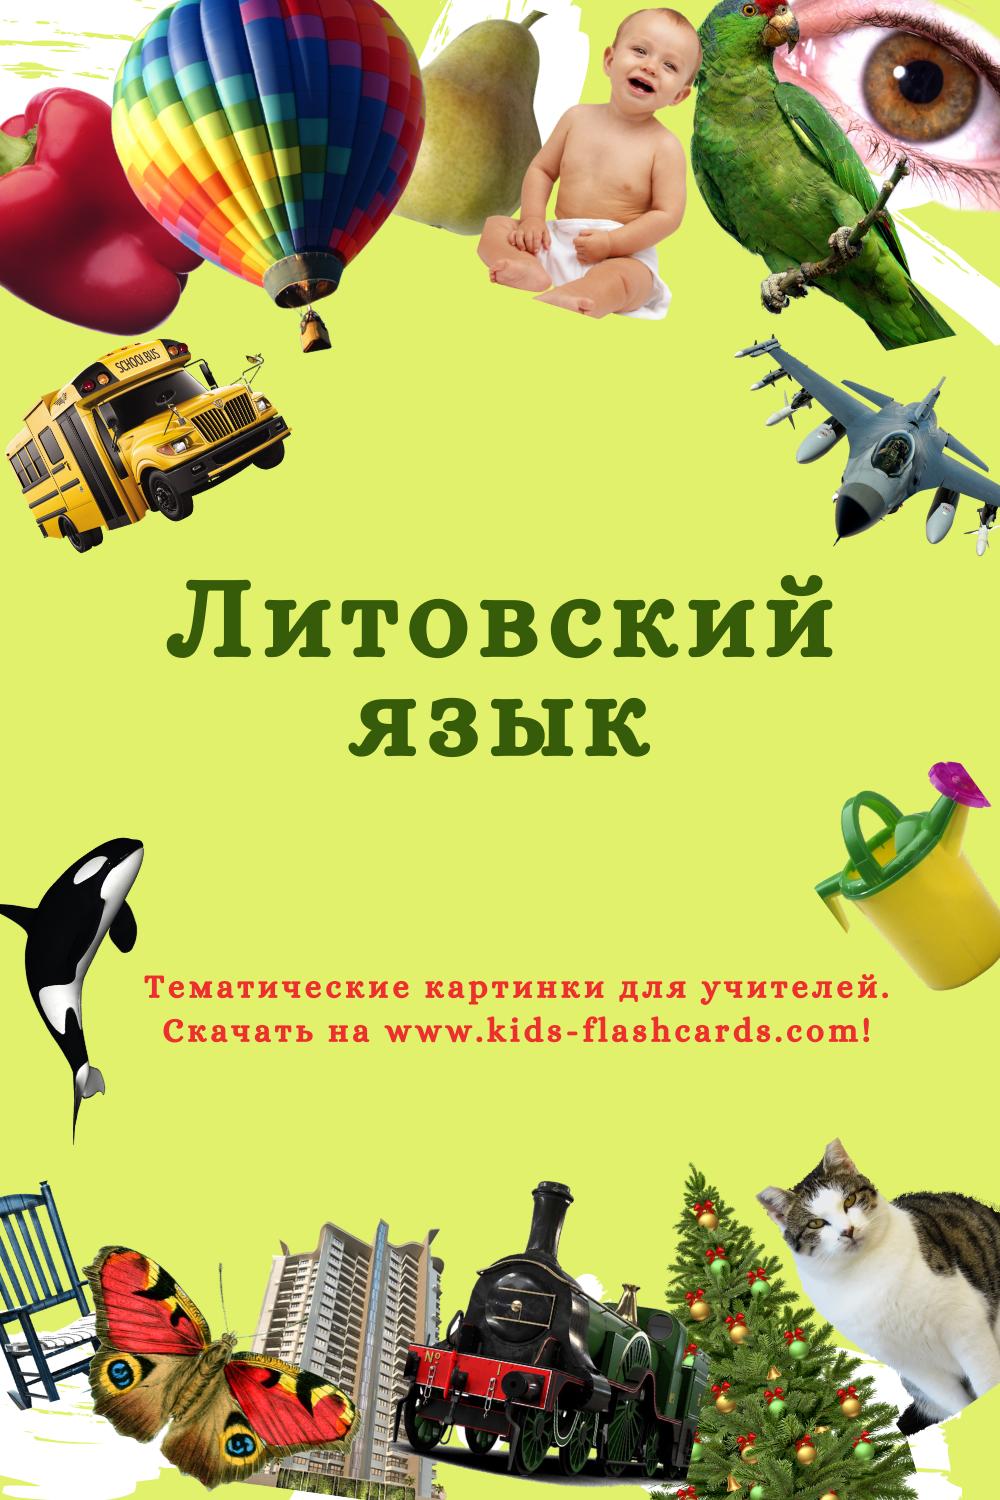 Литовском язык - распечатки для детей